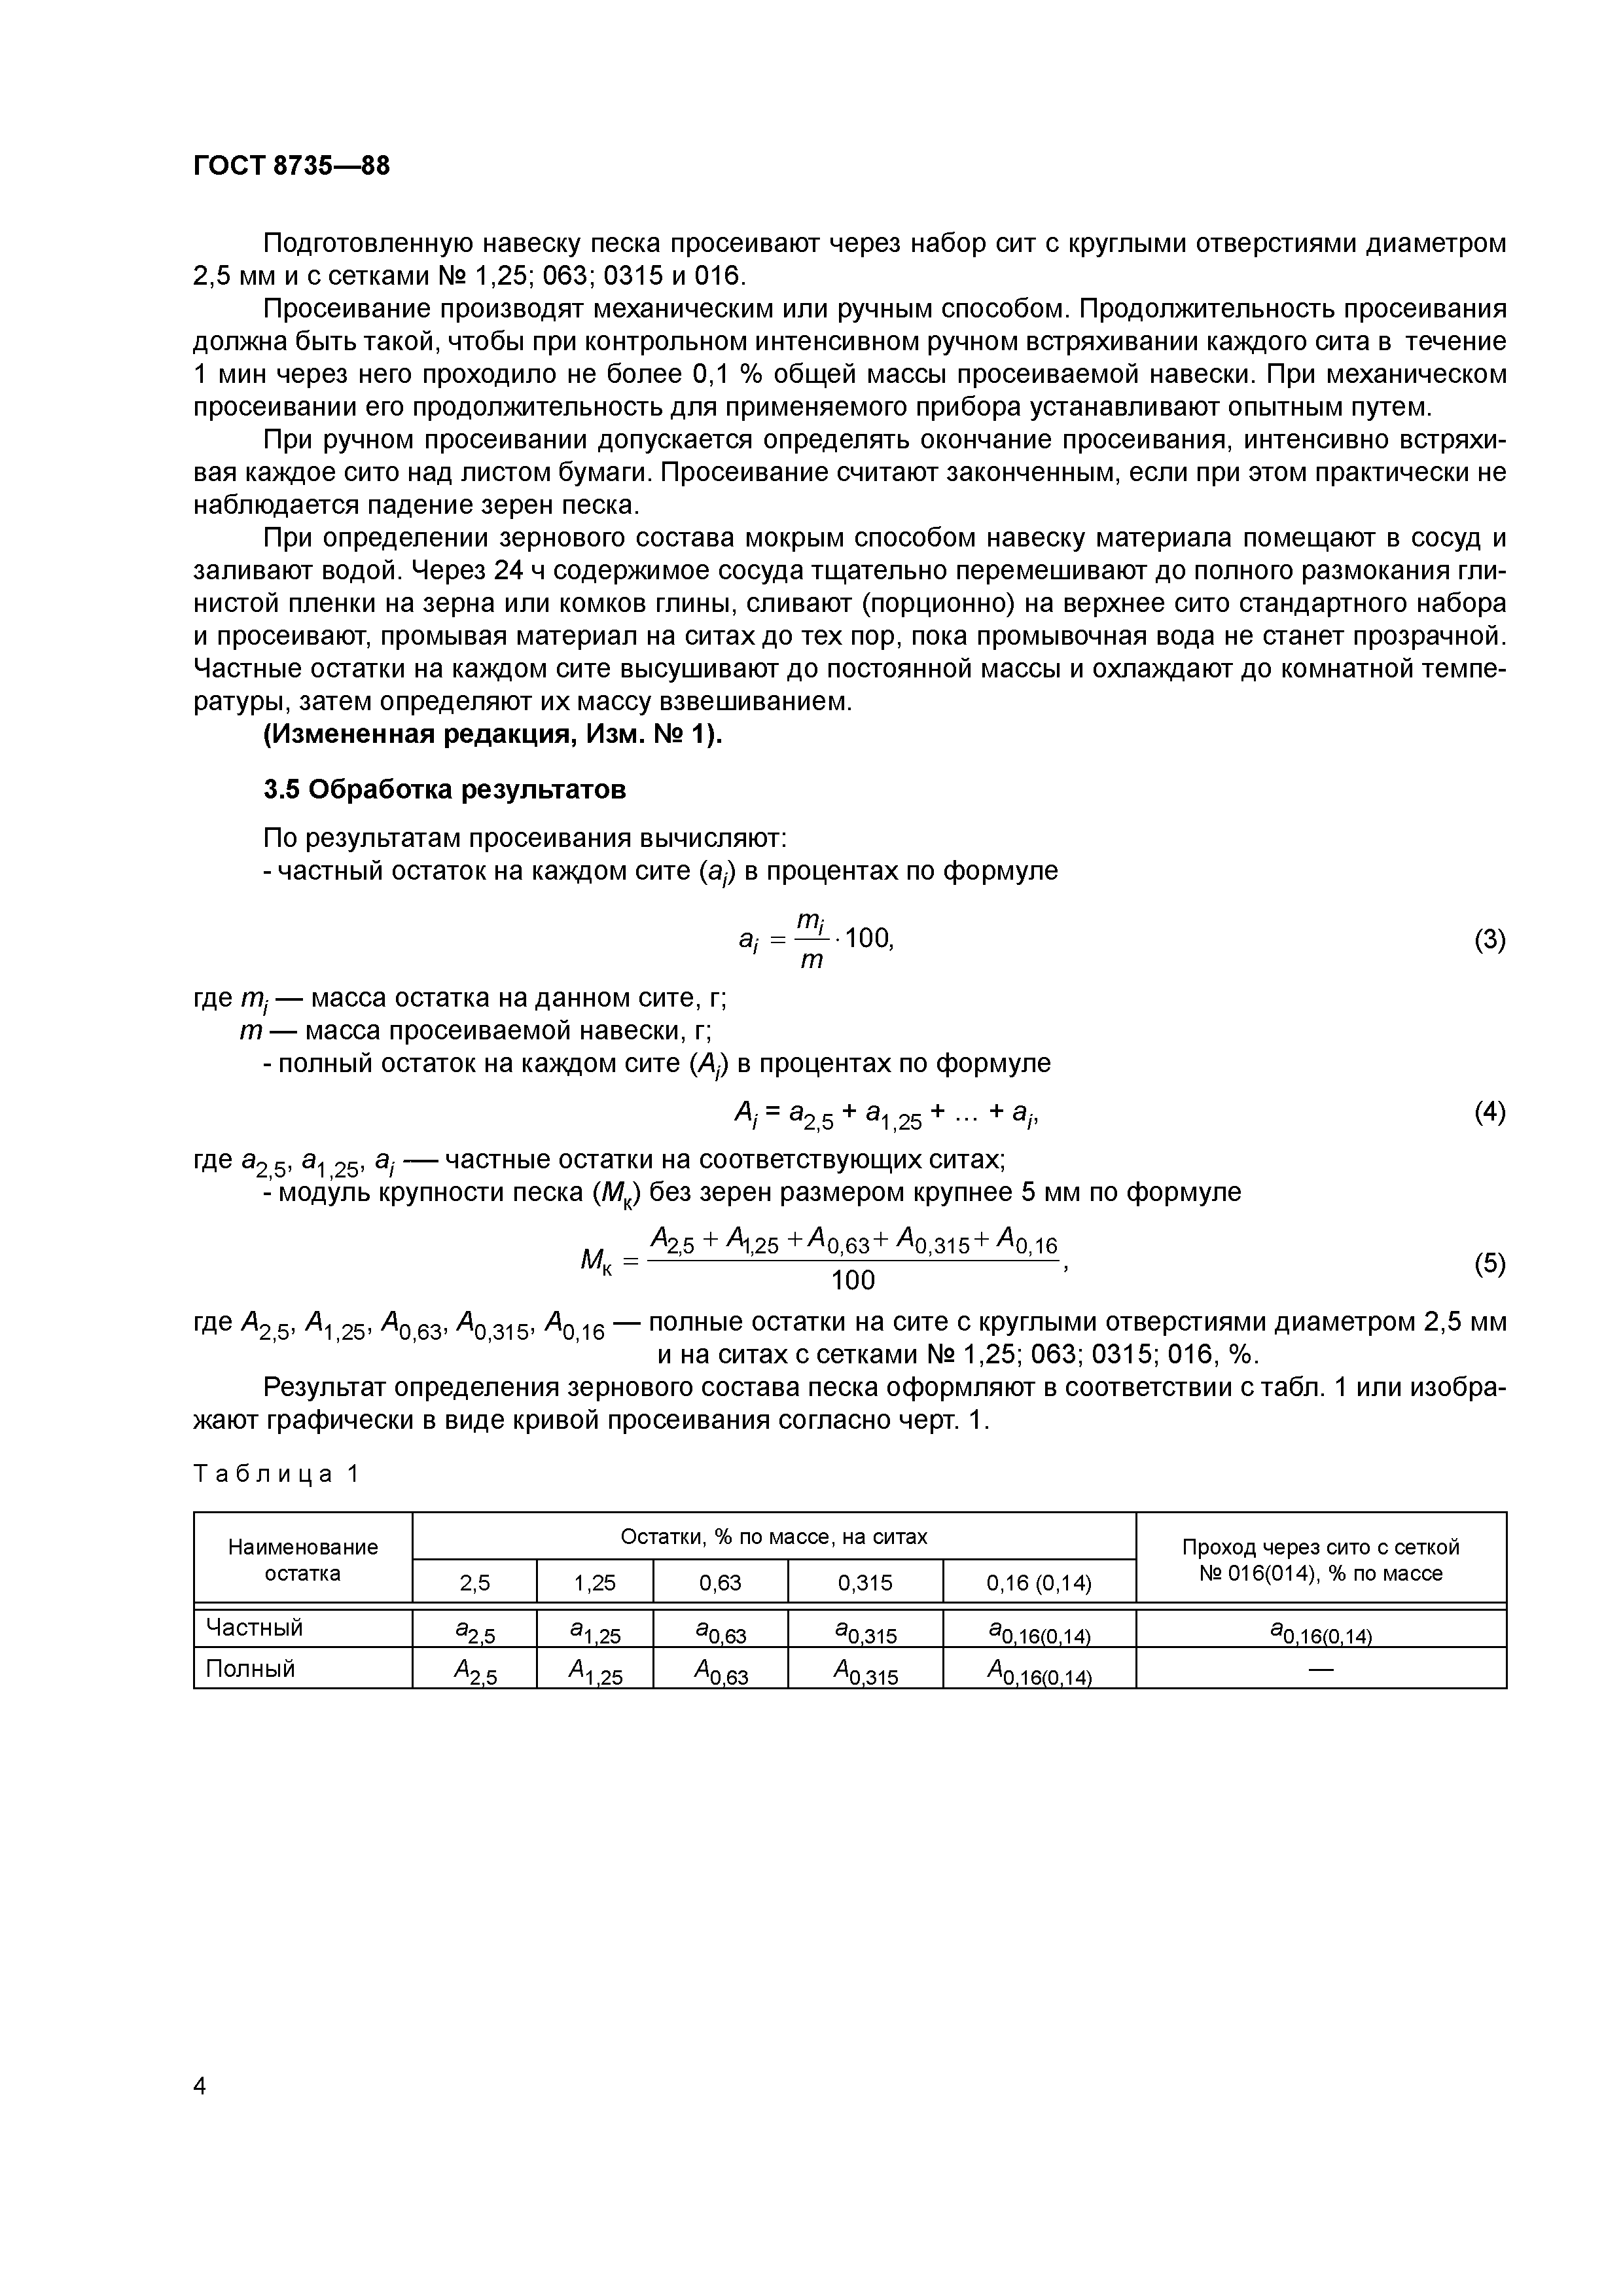 Модуль крупности песка ГОСТ 8735-88